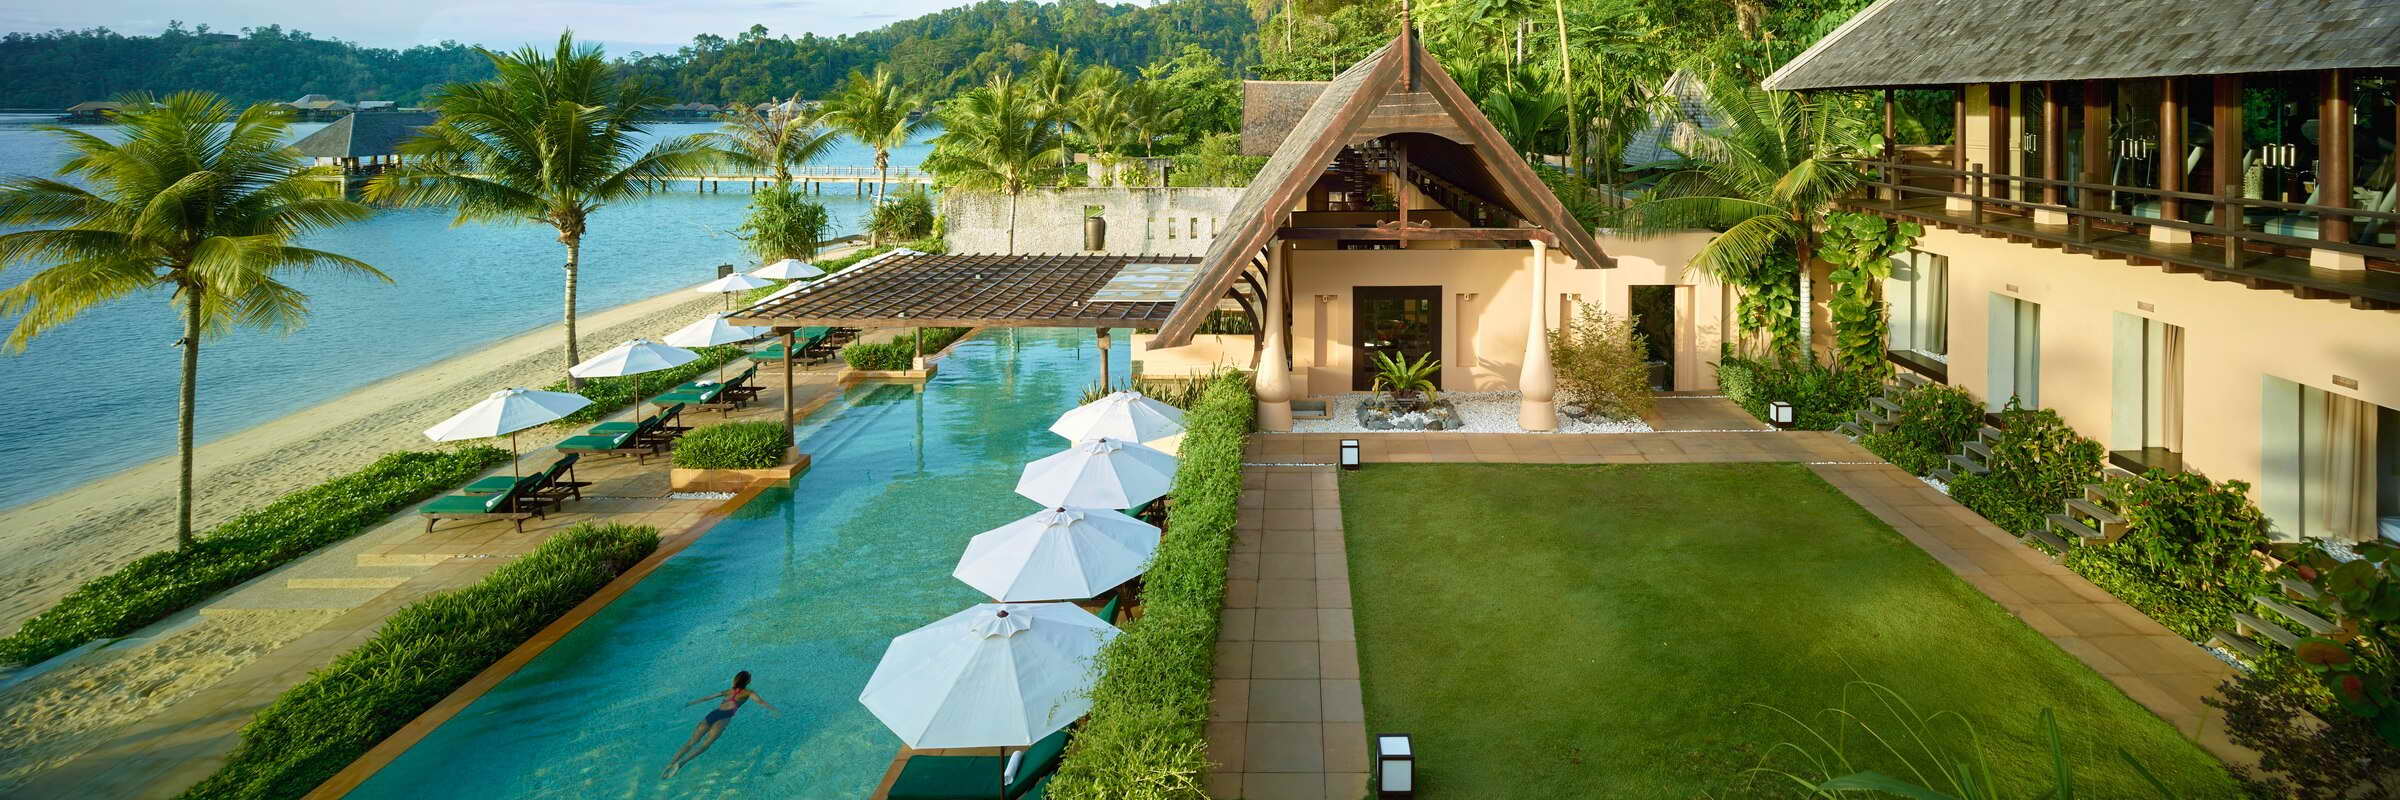 Die luxuriöse Anlage des Gaya Island Resorts ist umgeben von tropischer Dschungelvegetation und einem üppigen Mangrovenwald.